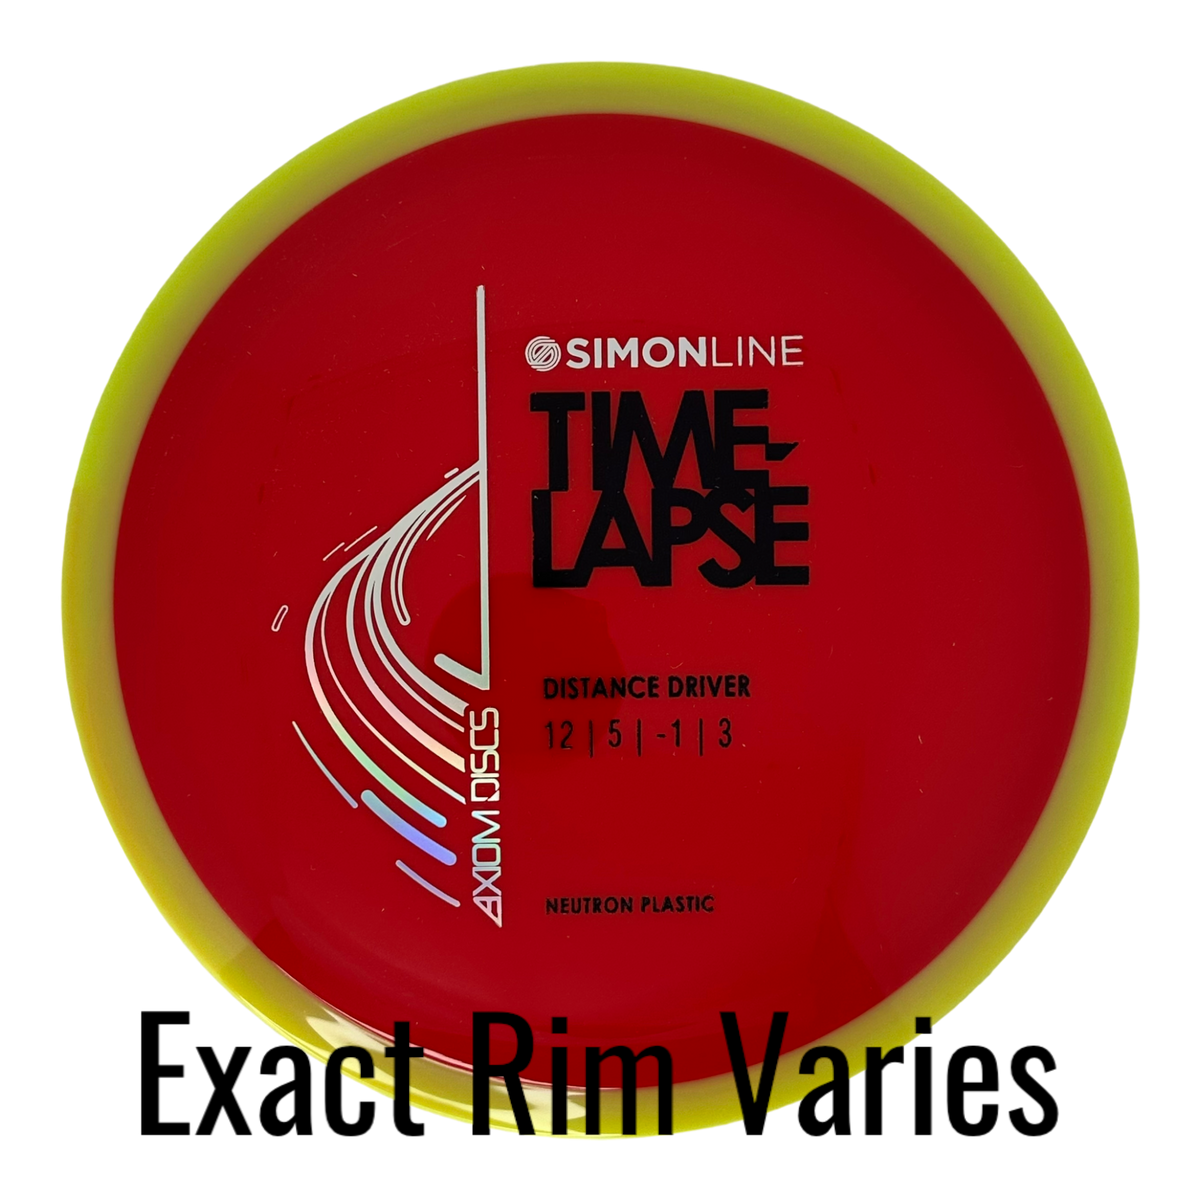 MVP Simon Lizotte Simon Line Time-Lapse